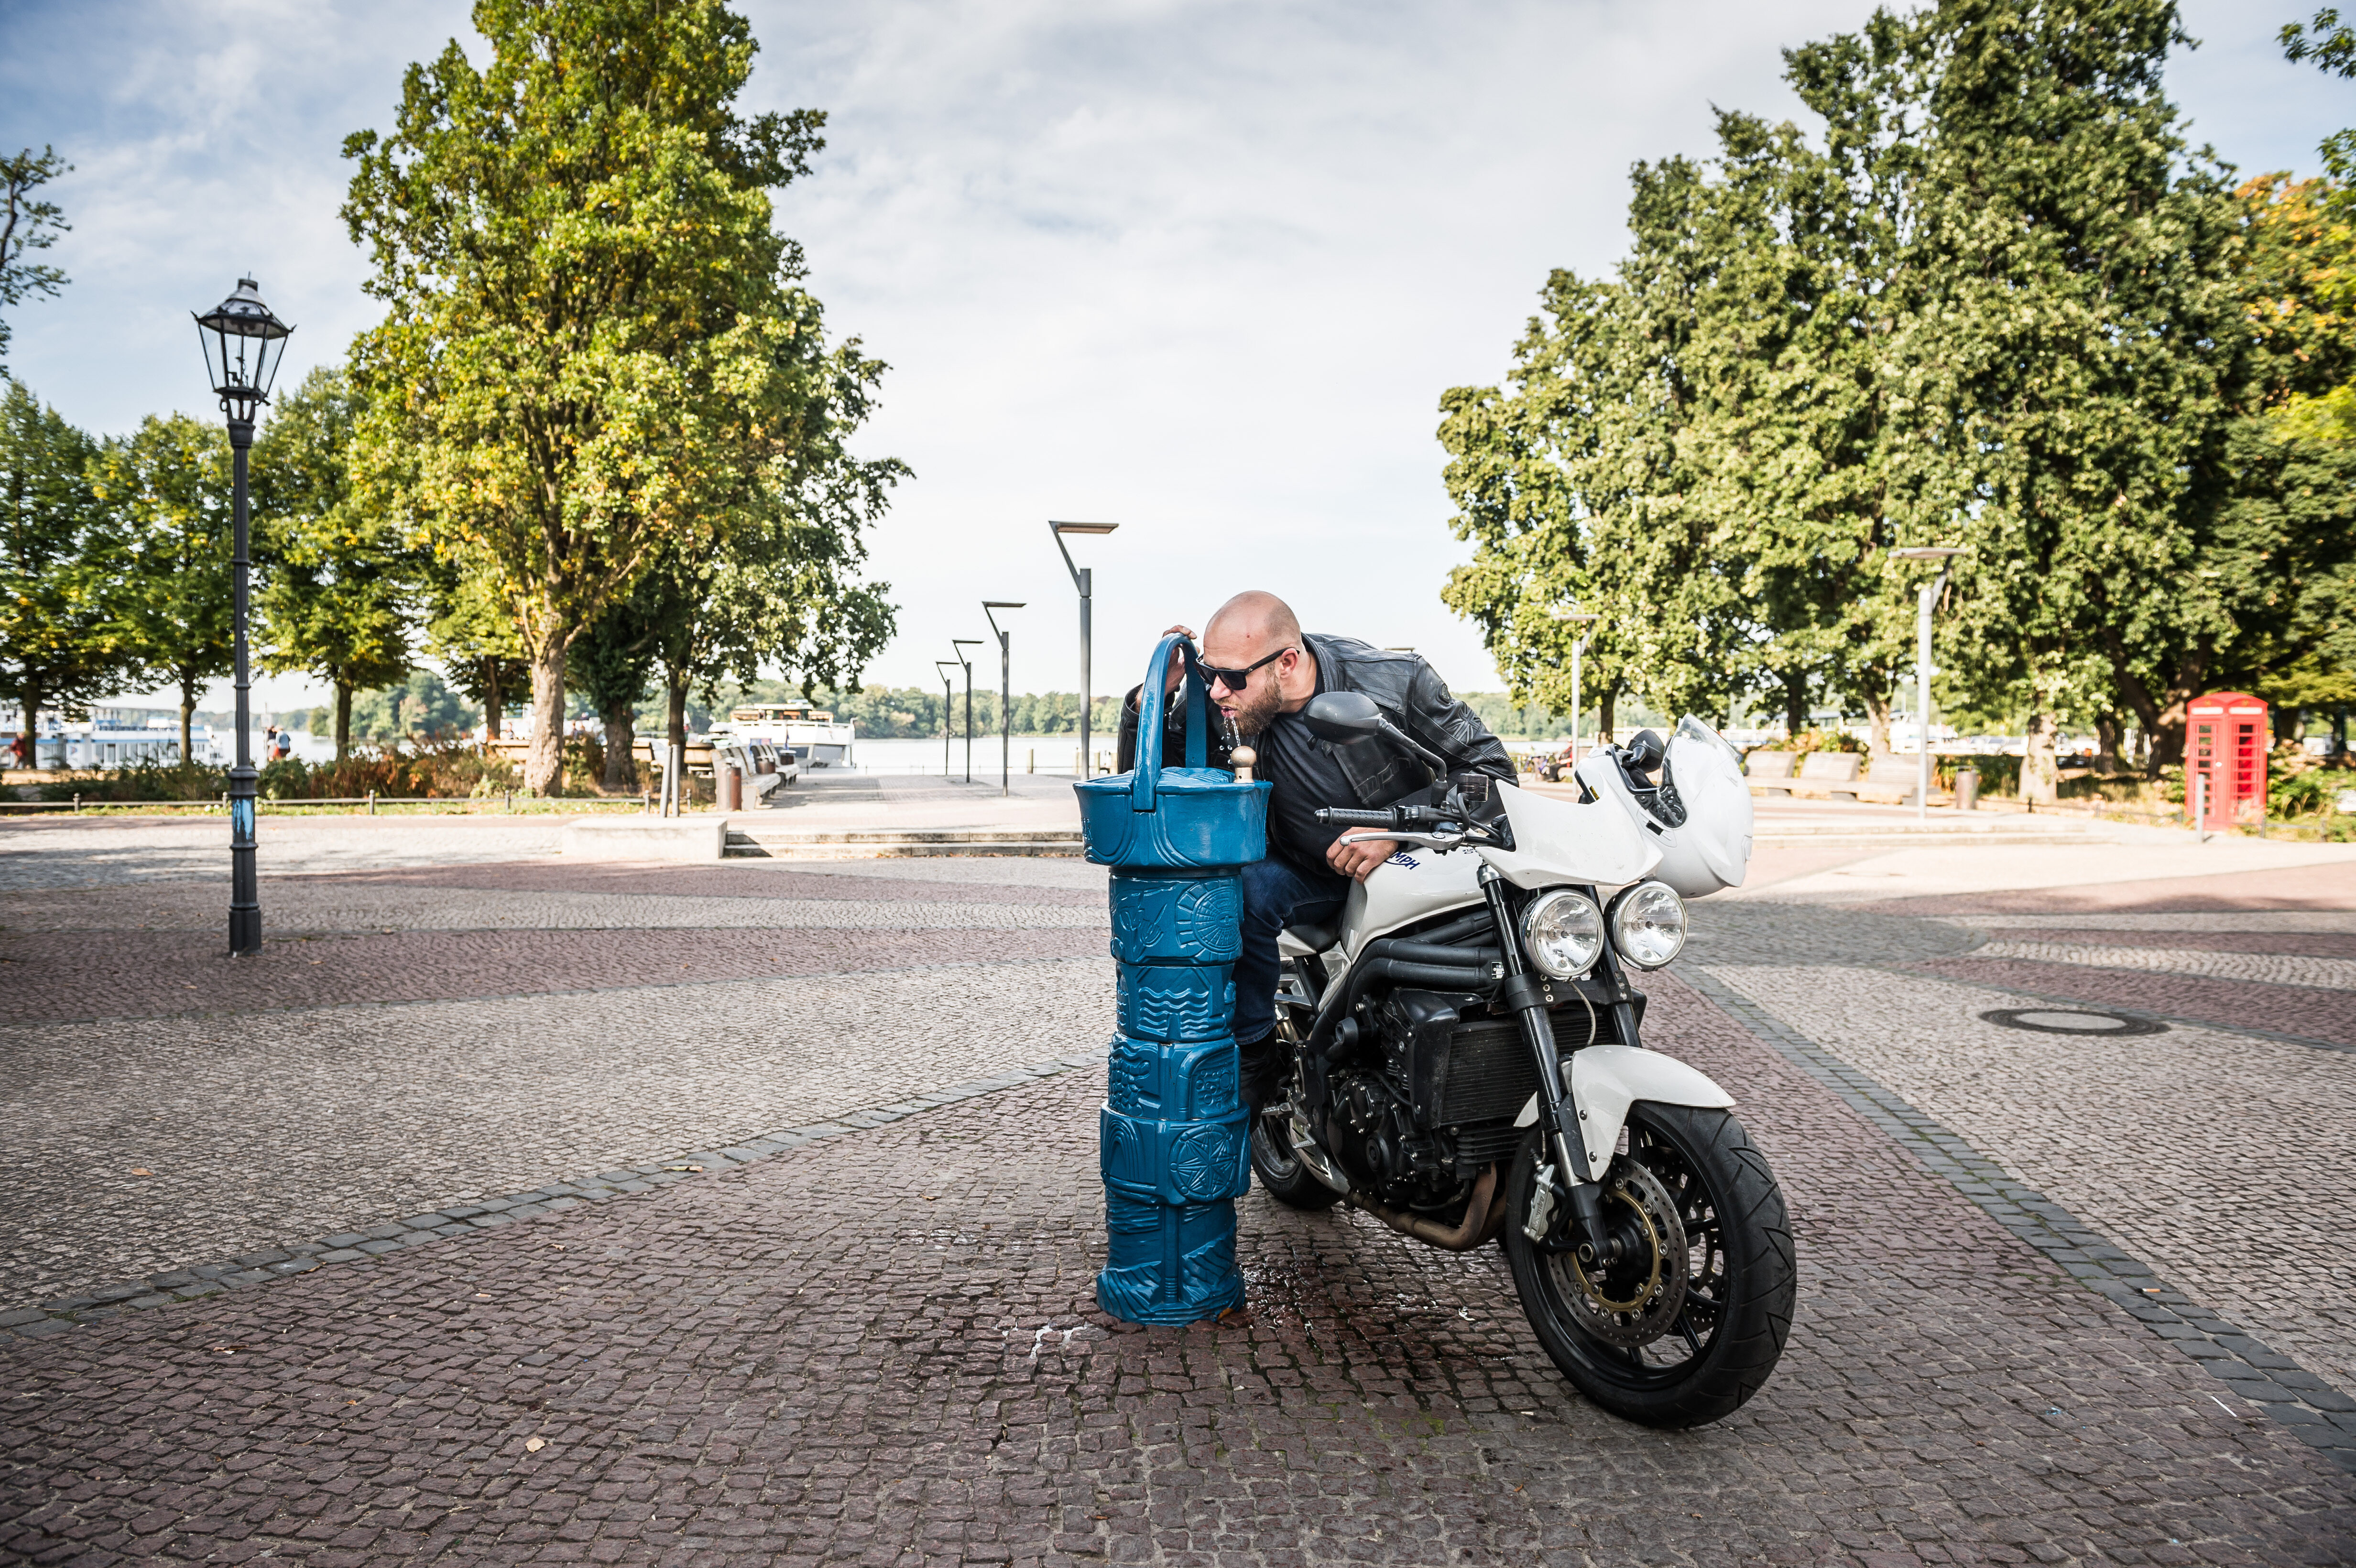 Motorradfahrer hält an einem öffentlichen Trinkwasserbrunnen und trinkt dort aus dem Hahn.